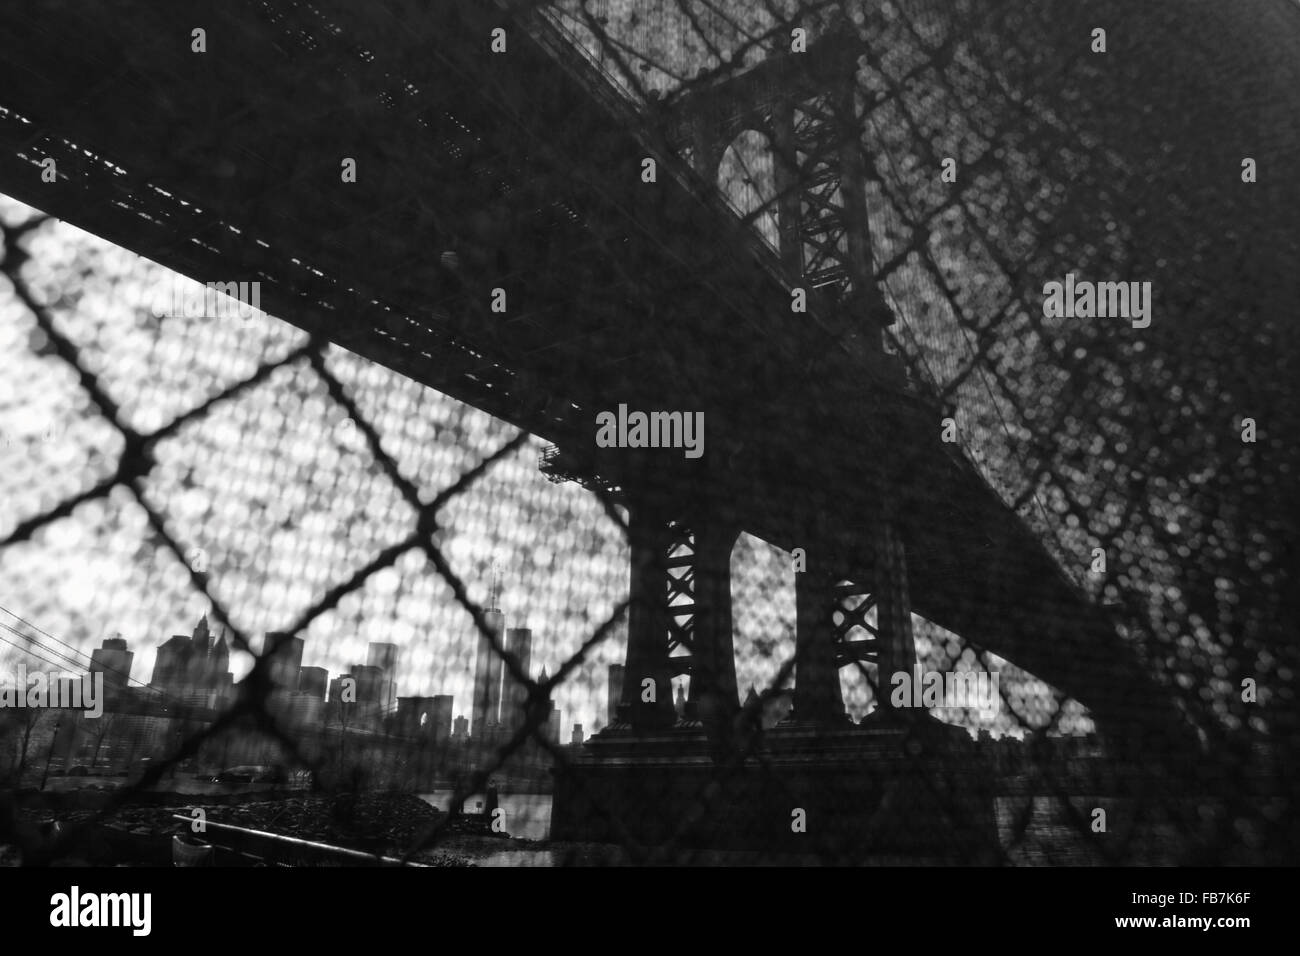 Verzerrte Sicht der Manhattan Bridge Waterfront New York City durch einen Drahtzaun Sicherheit Industrie. Monochrom, schwarz / weiß Bild. Stockfoto